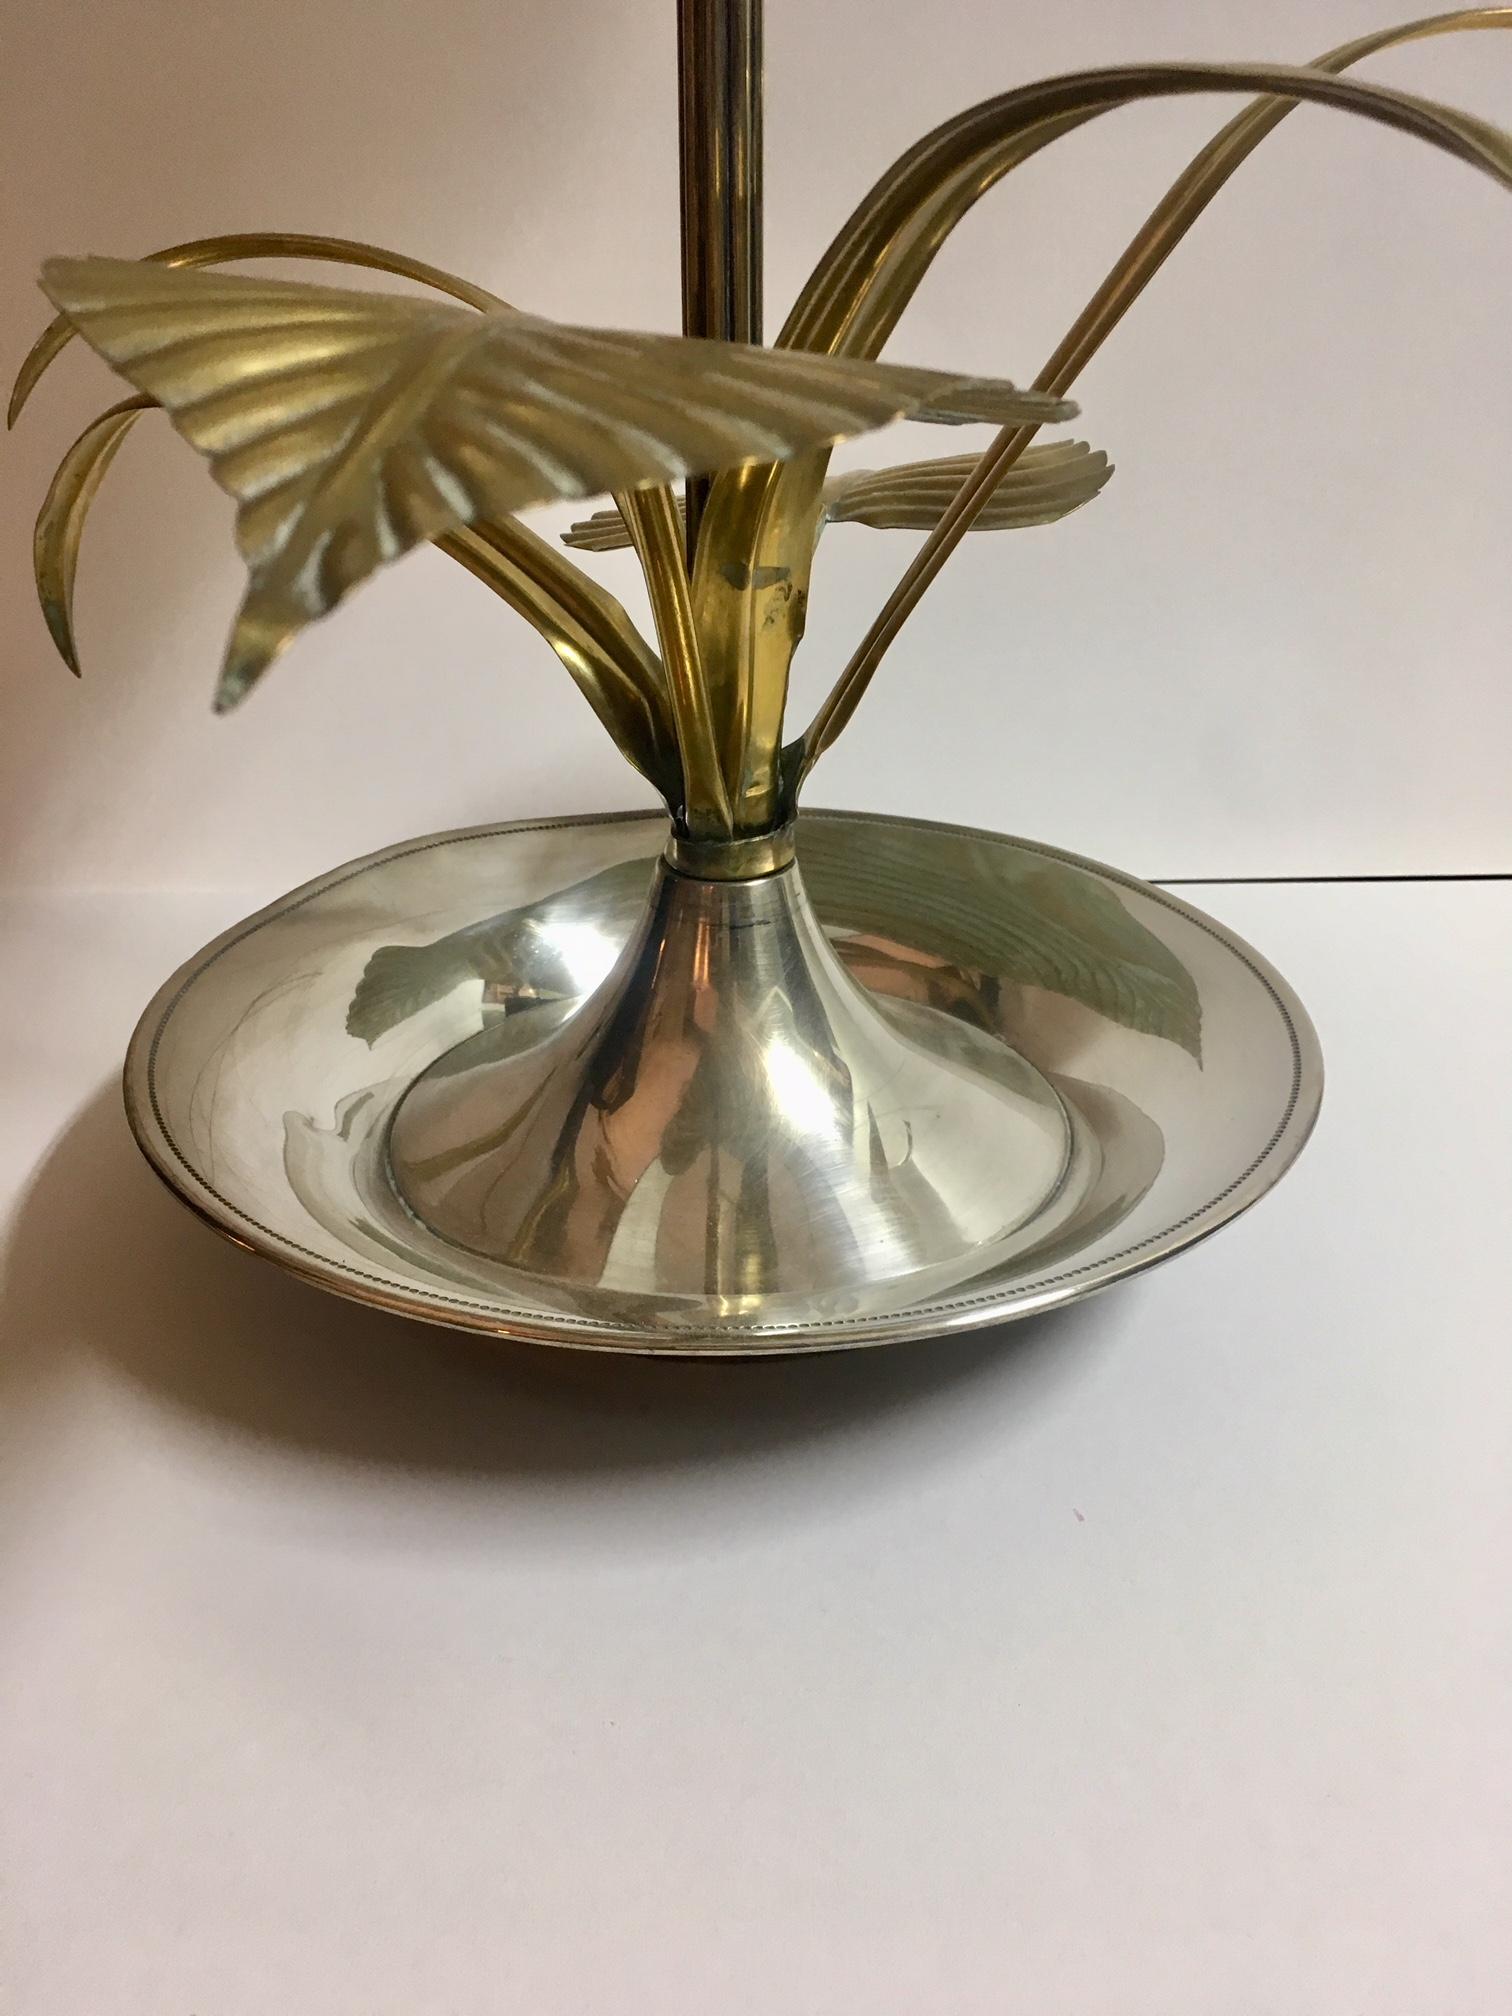 Lampe de table fleurie en laiton de haute qualité représentant une fleur de lotus et du feuillage, câblage électrique rénové et neuf, avec deux points de lumière, écran d'abat-jour en soie et velours.